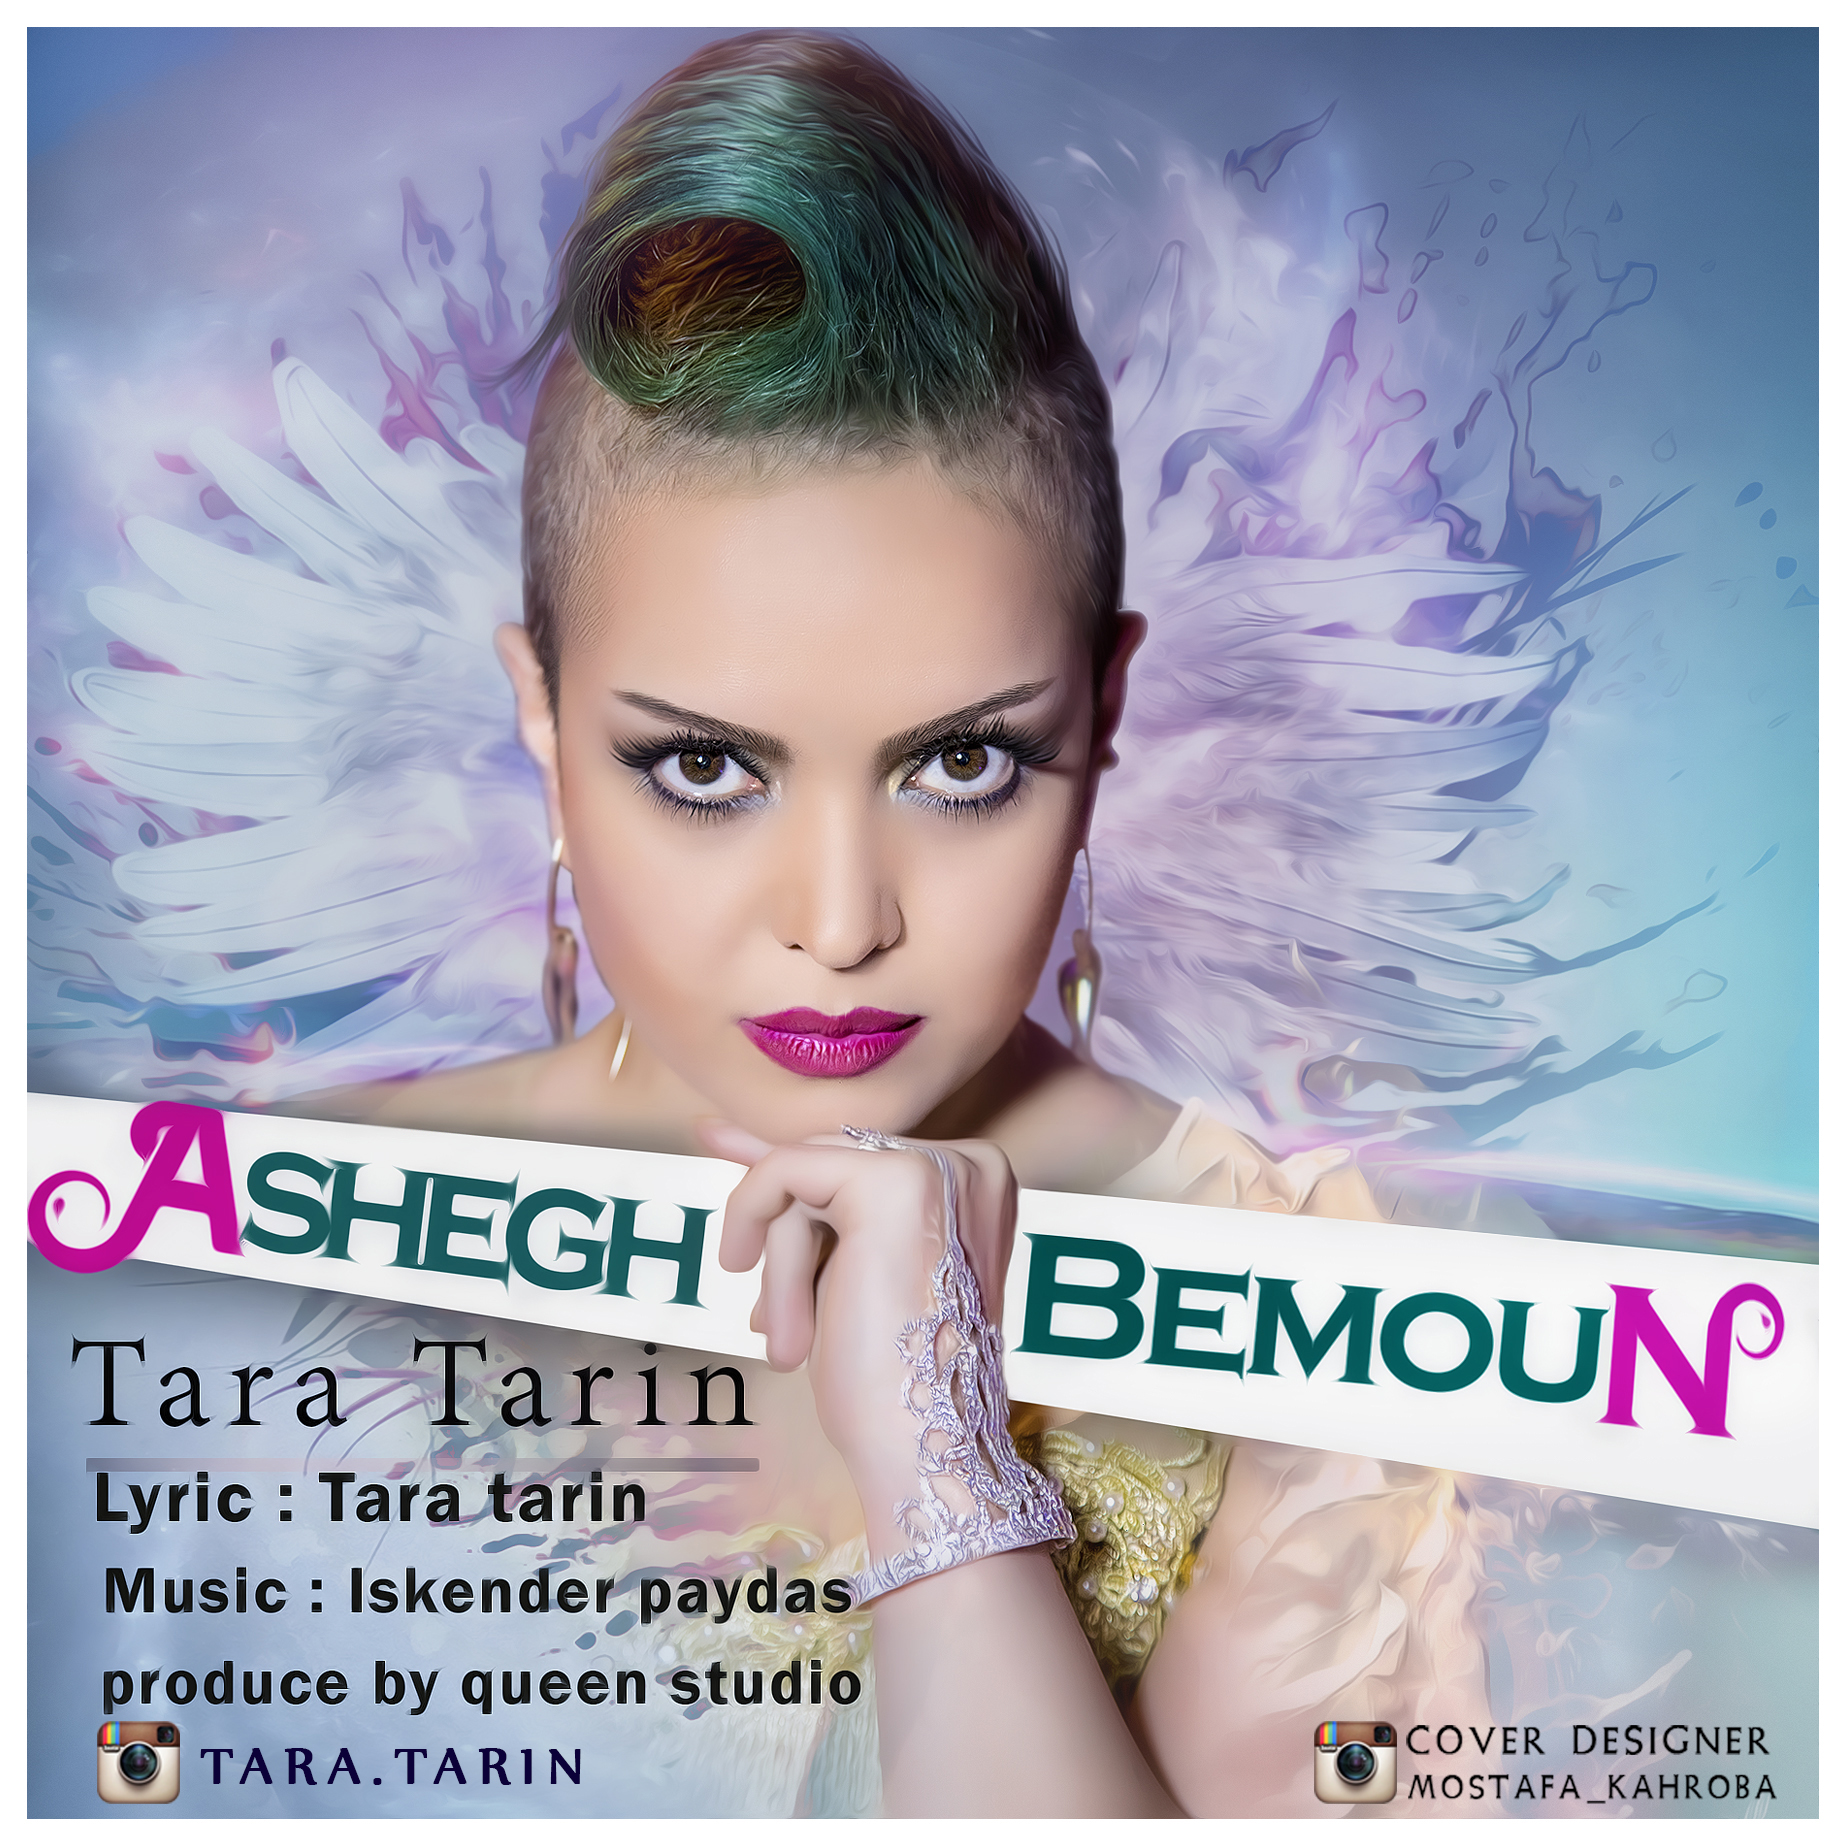 Tara Tarin - Ashegh Bemoun 